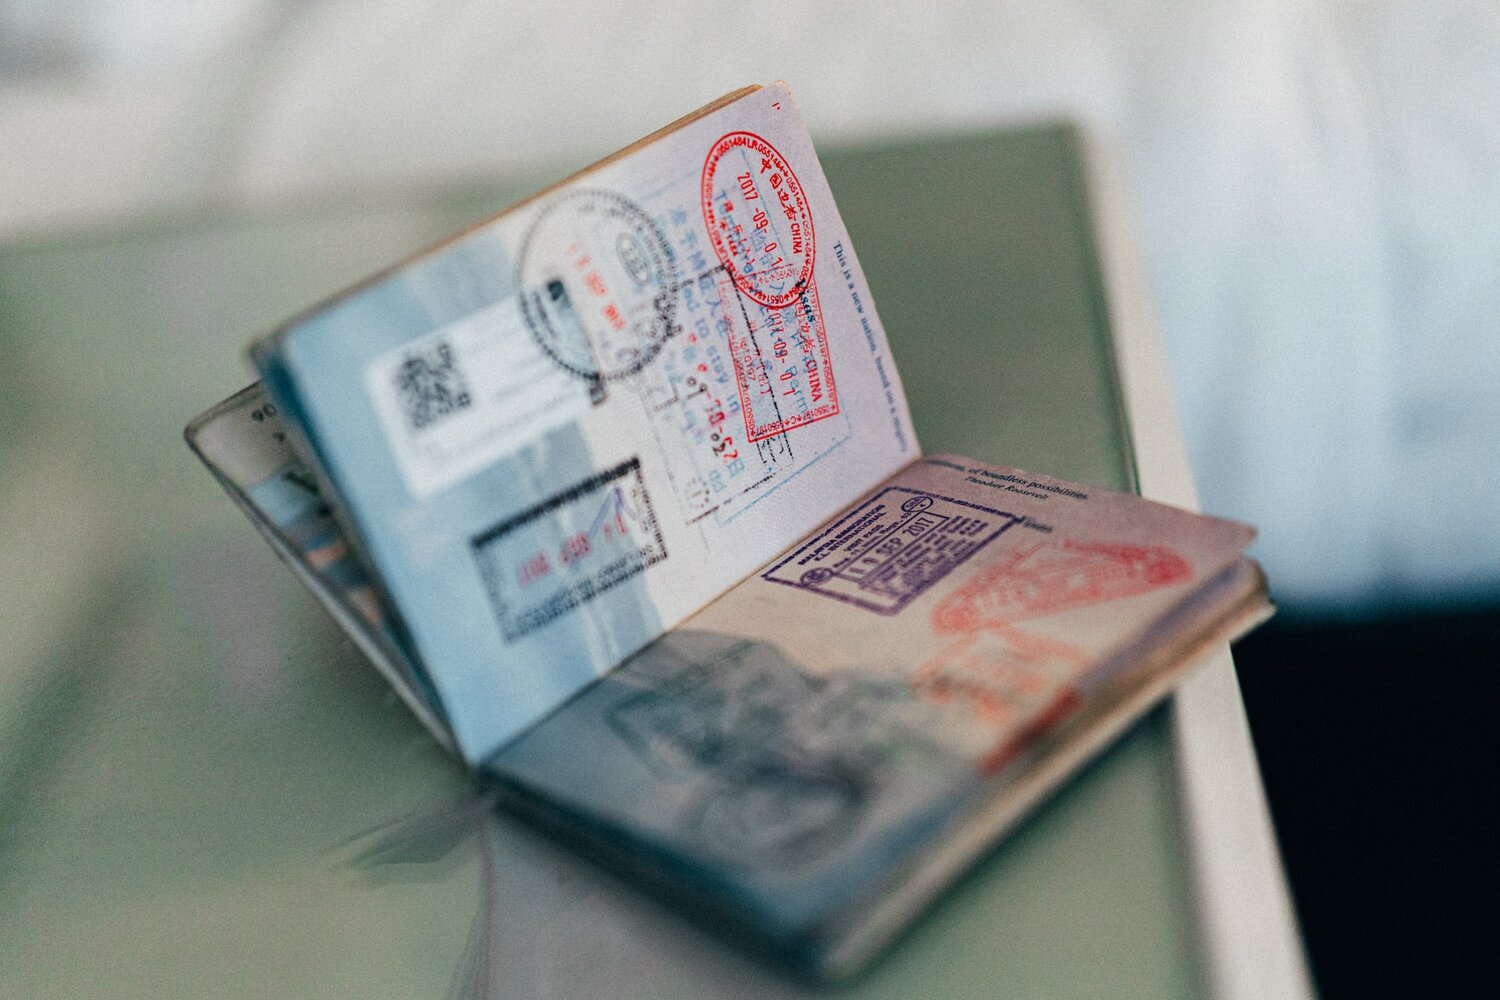 Thailand Digital Nomad Visa